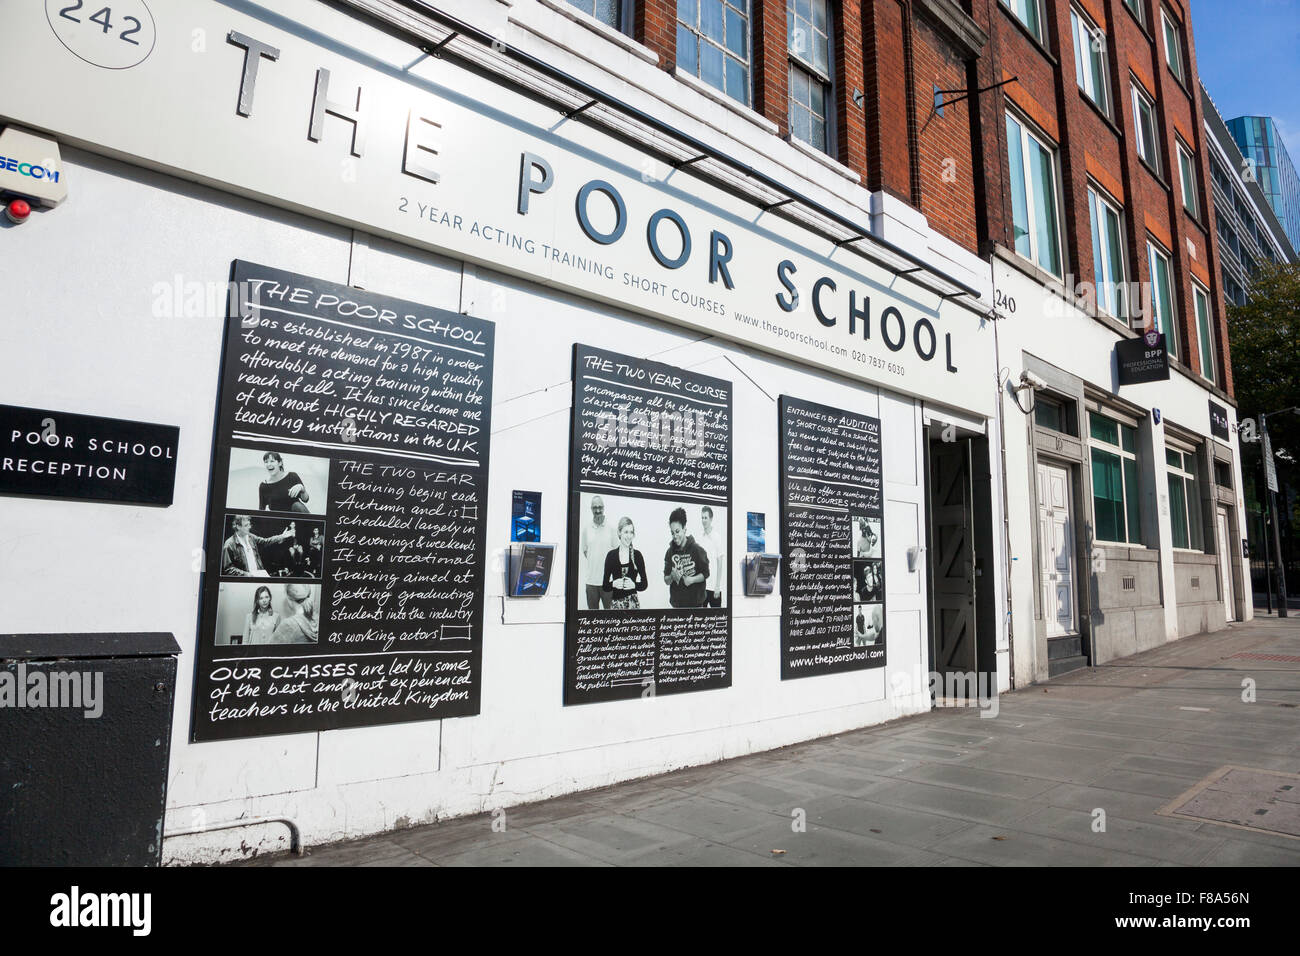 Les pauvres l'école - École de théâtre à King's Cross, Londres, UK Banque D'Images